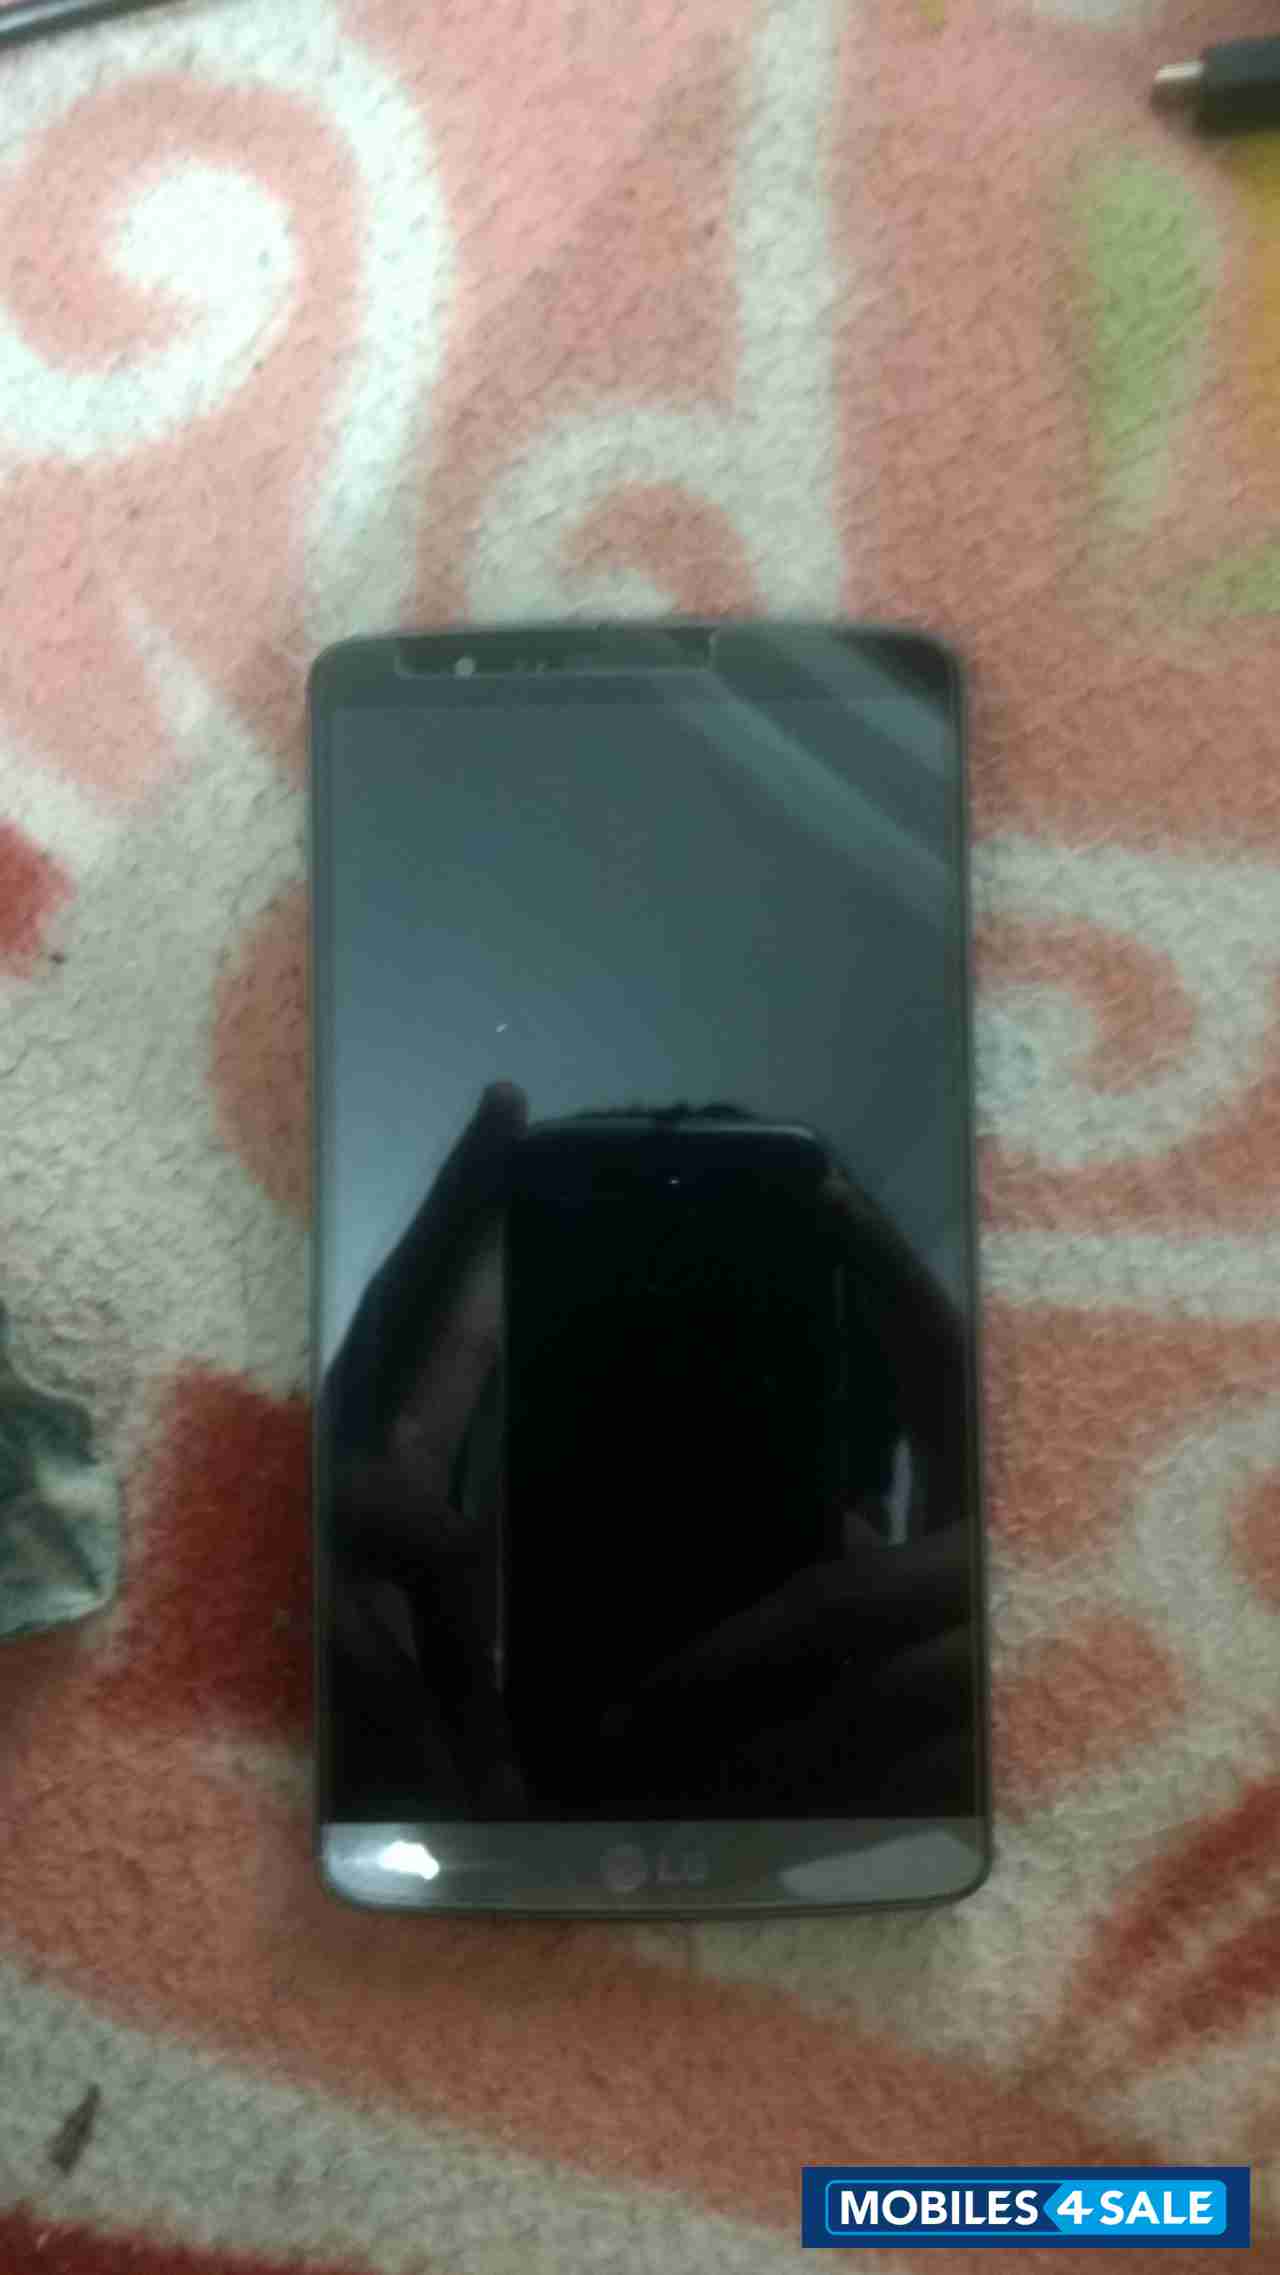 Metallic Black LG G3